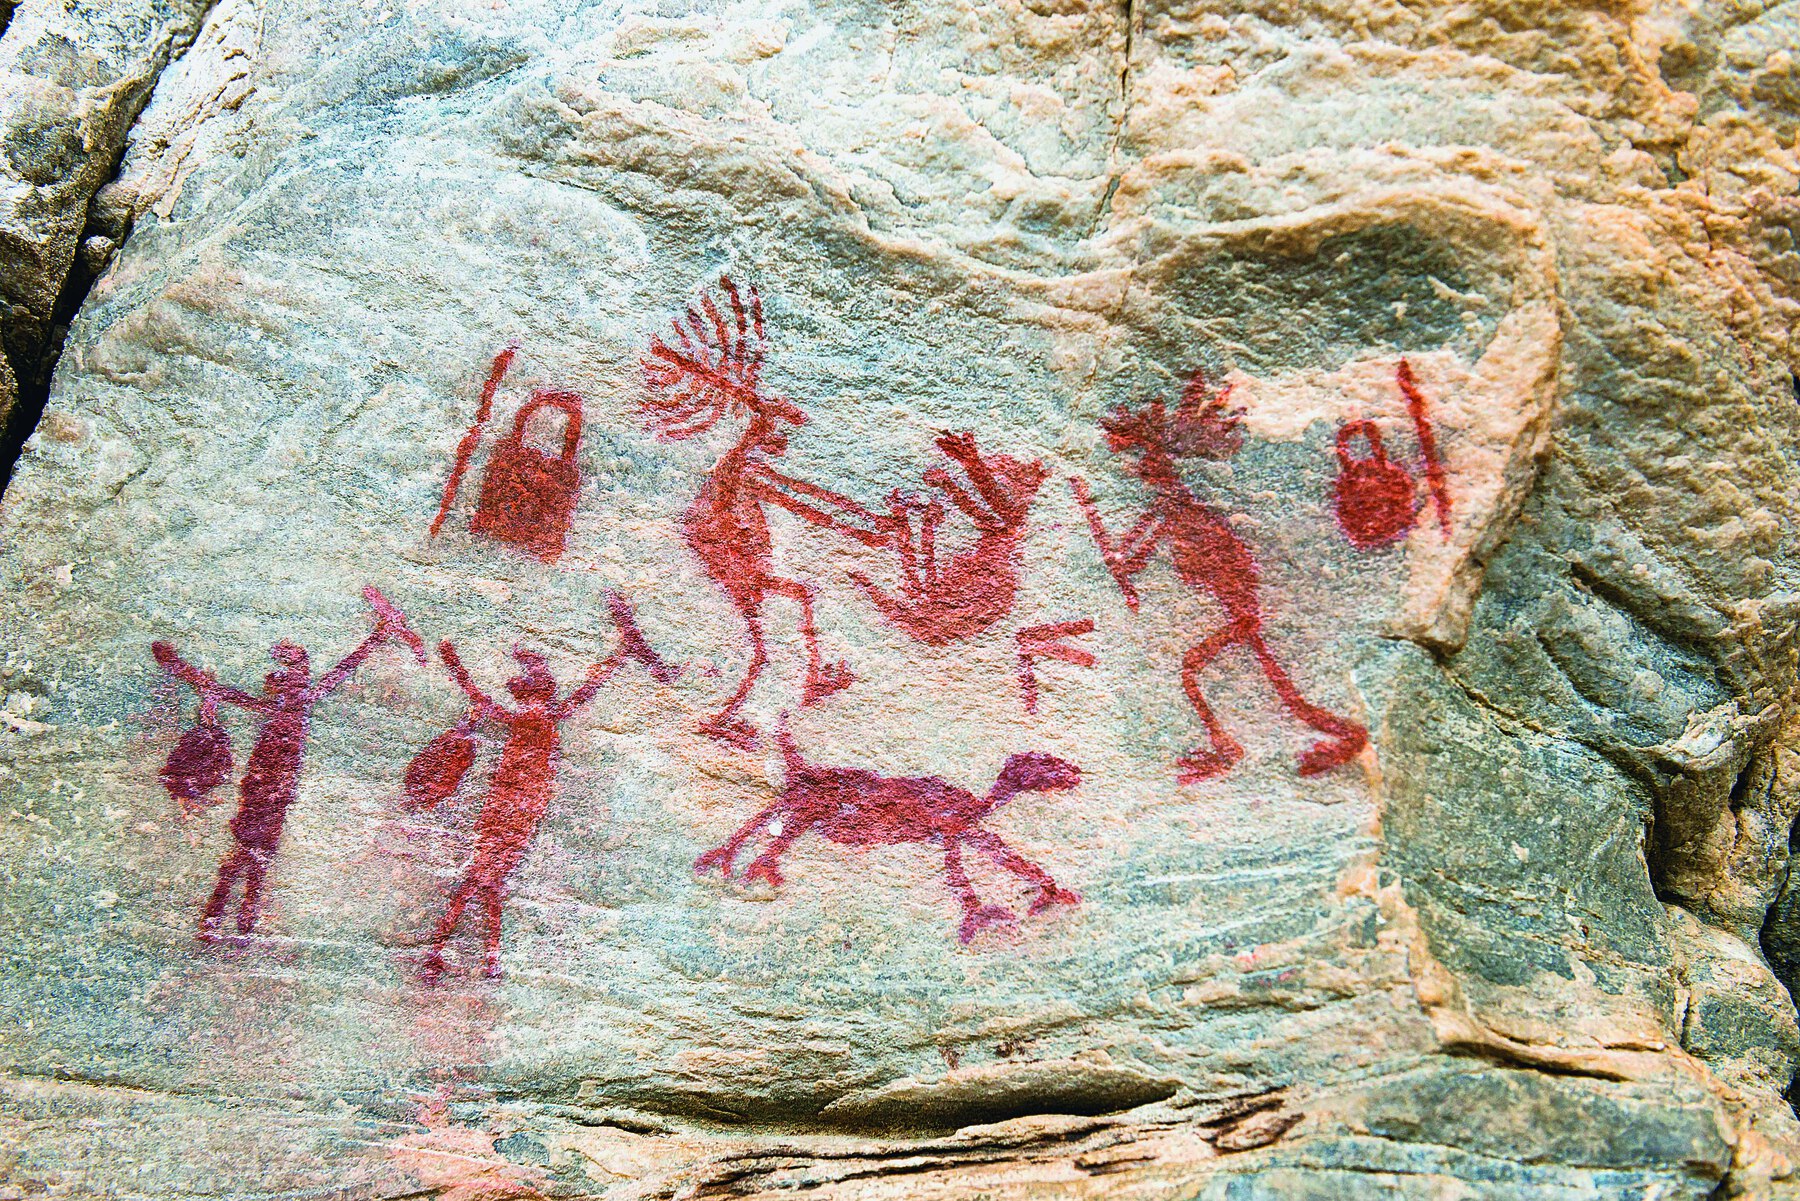 Fotografia. Pintura rupestre em tons de vermelho com imagens de seres humanos segurando lanças e animais entre eles. Dois seres humanos têm adornos na cabeça, em forma de coroa, e outros dois têm objetos arredondados pendurados em um dos braços.